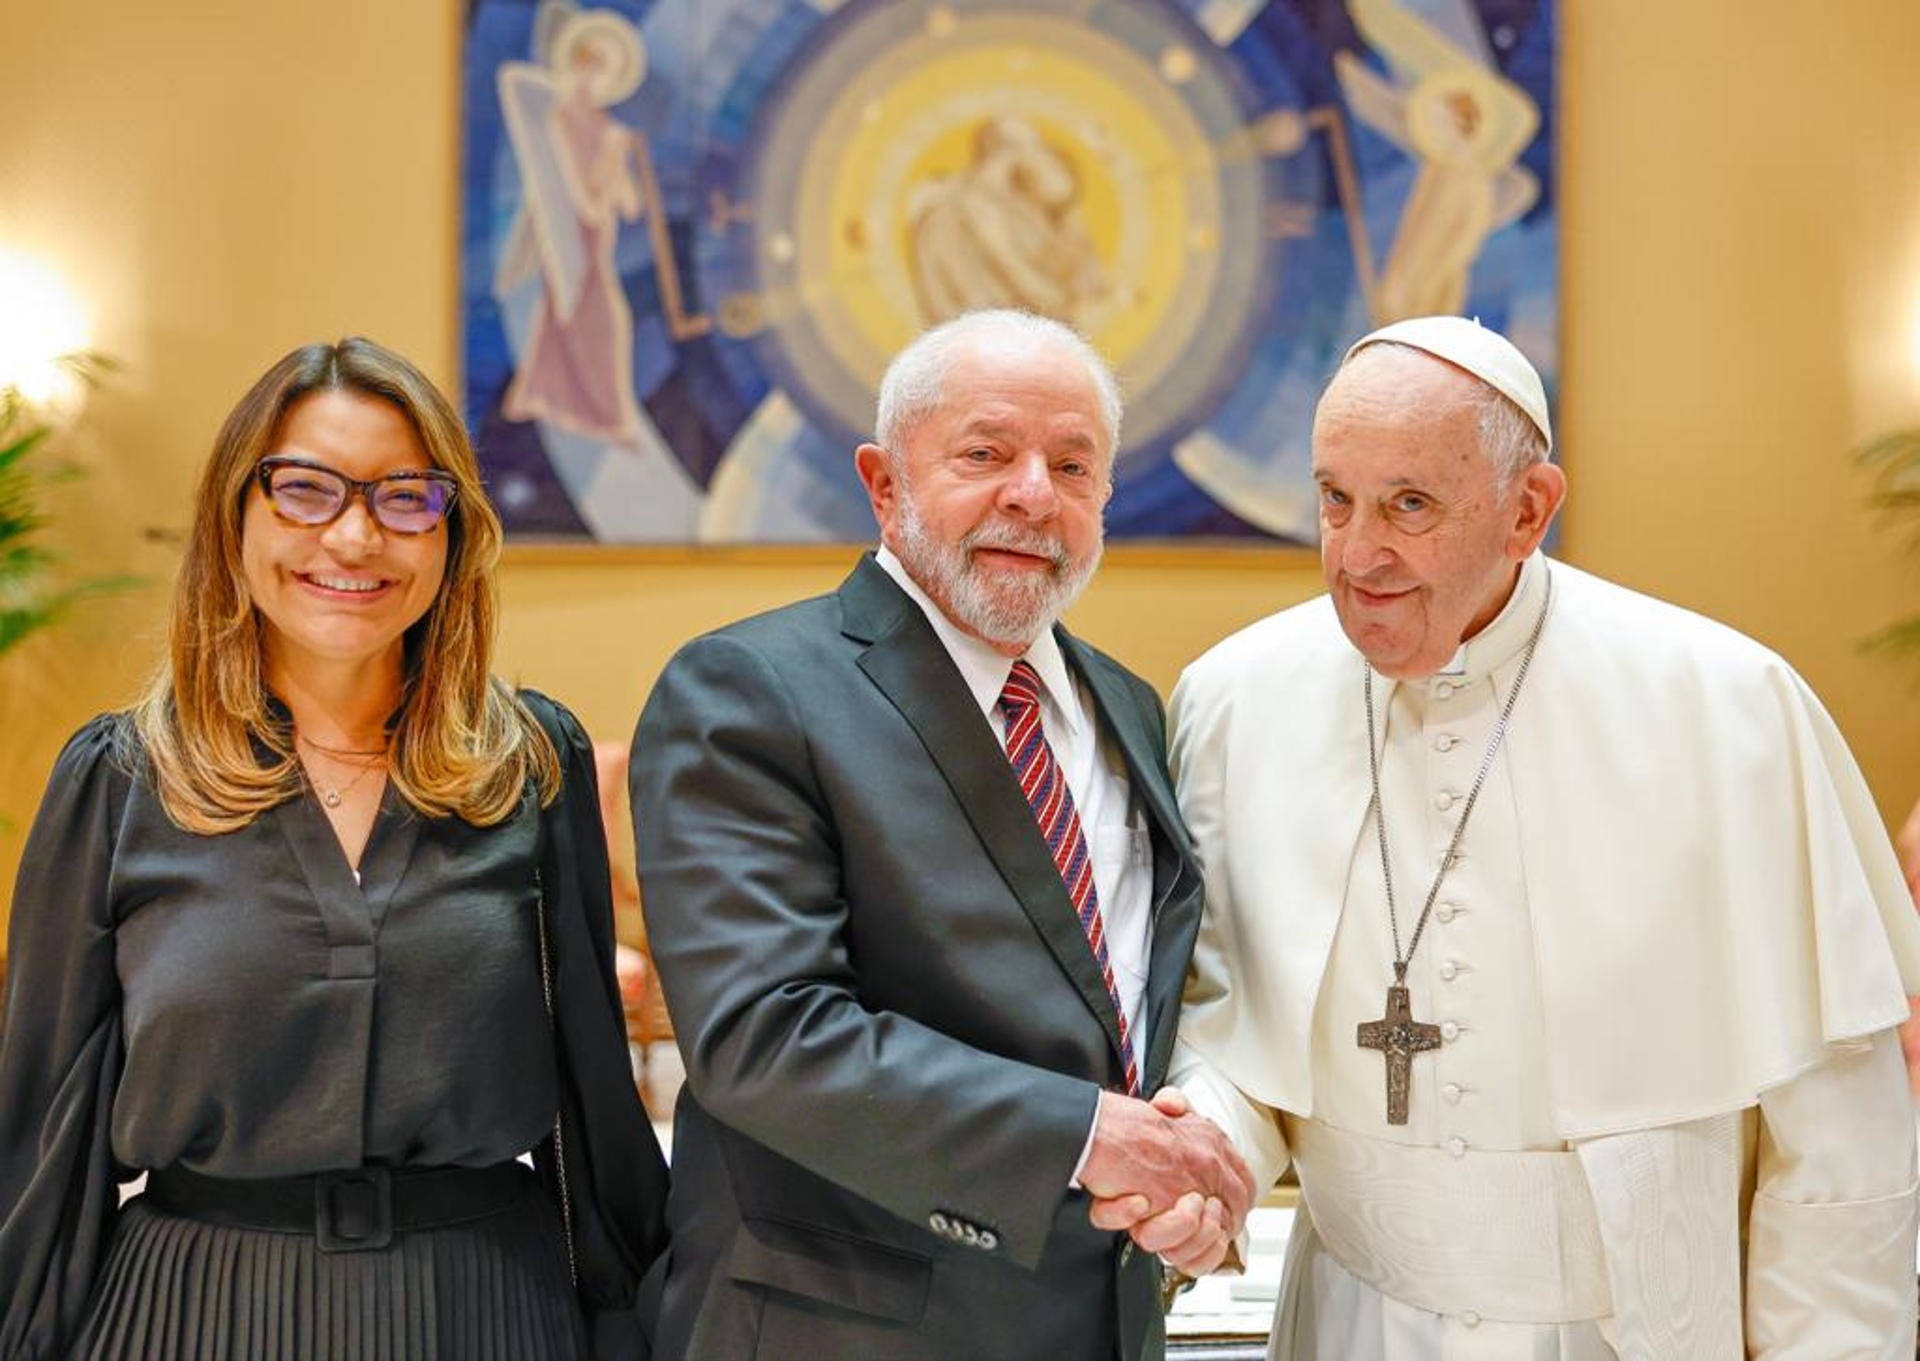 El papa Francisco a Lula: “Estamos en tiempos de guerra y la paz es muy frágil”